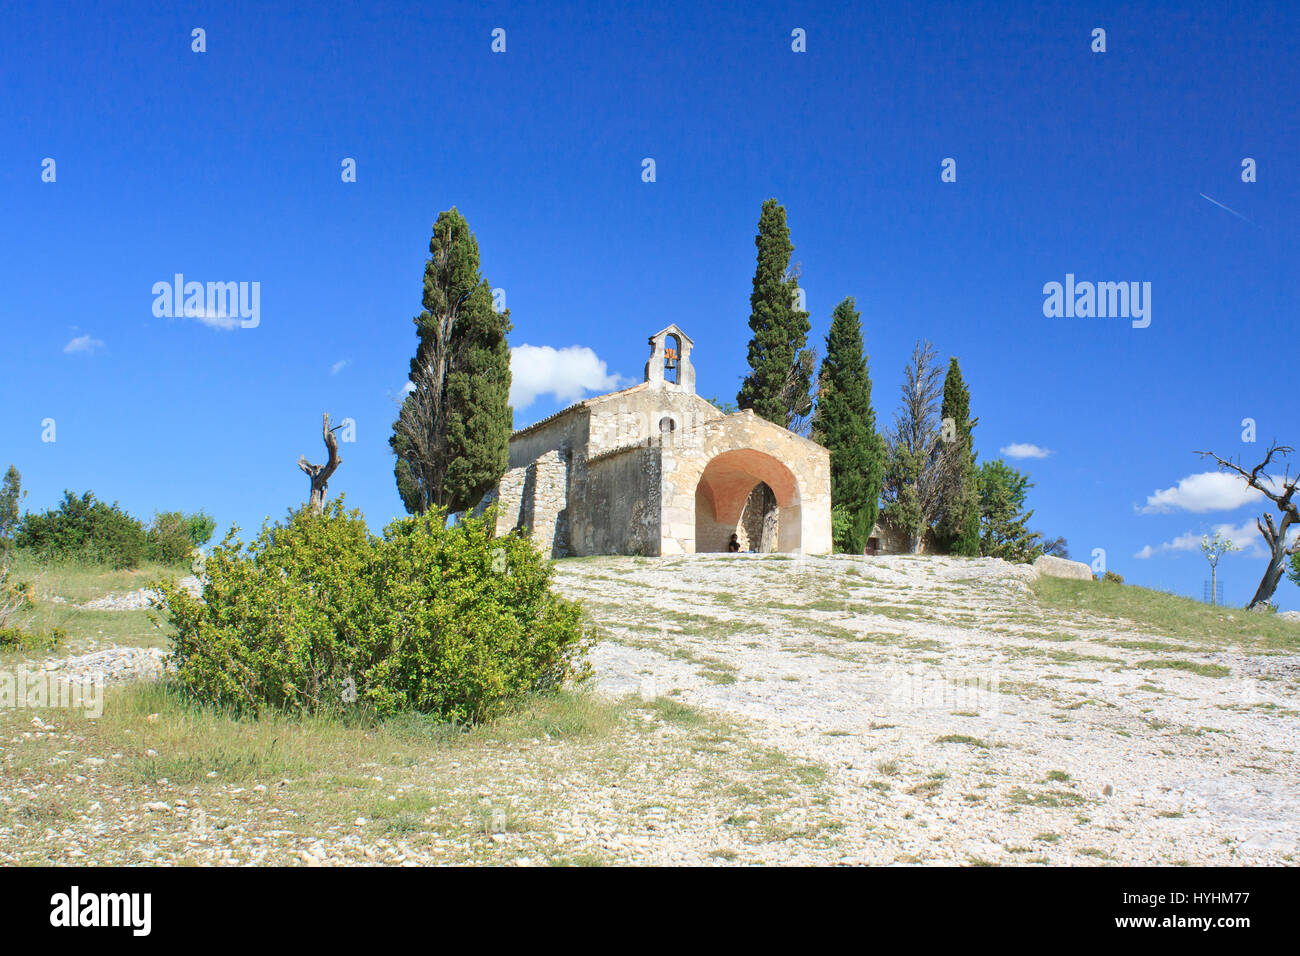 Eygalieres, Kapelle St. Sixte, Alpilles, Bouches-du-Rhône, Frankreich Stockfoto